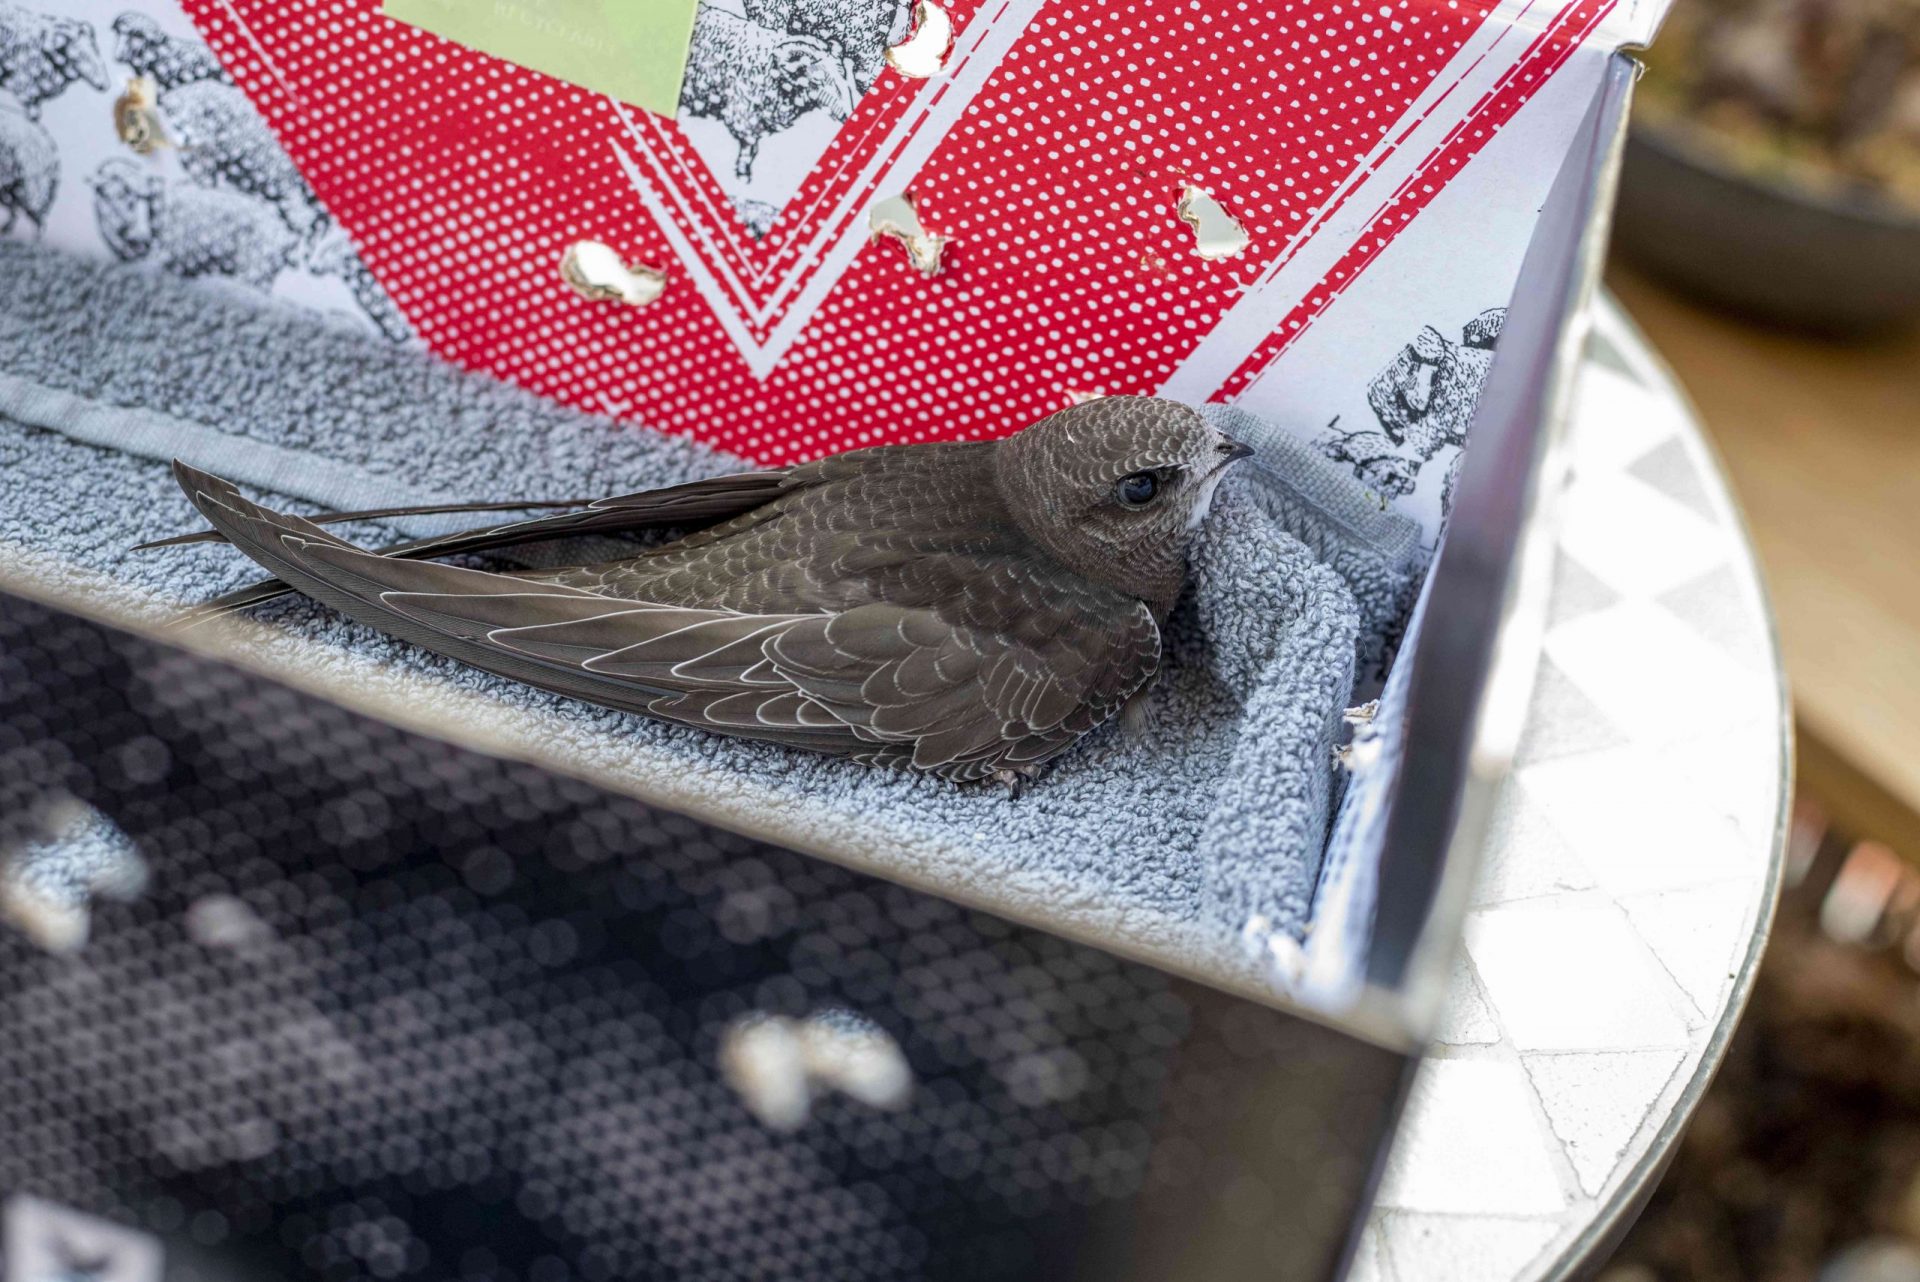 Pájaro joven sentado sobre una toalla en una caja de zapatos